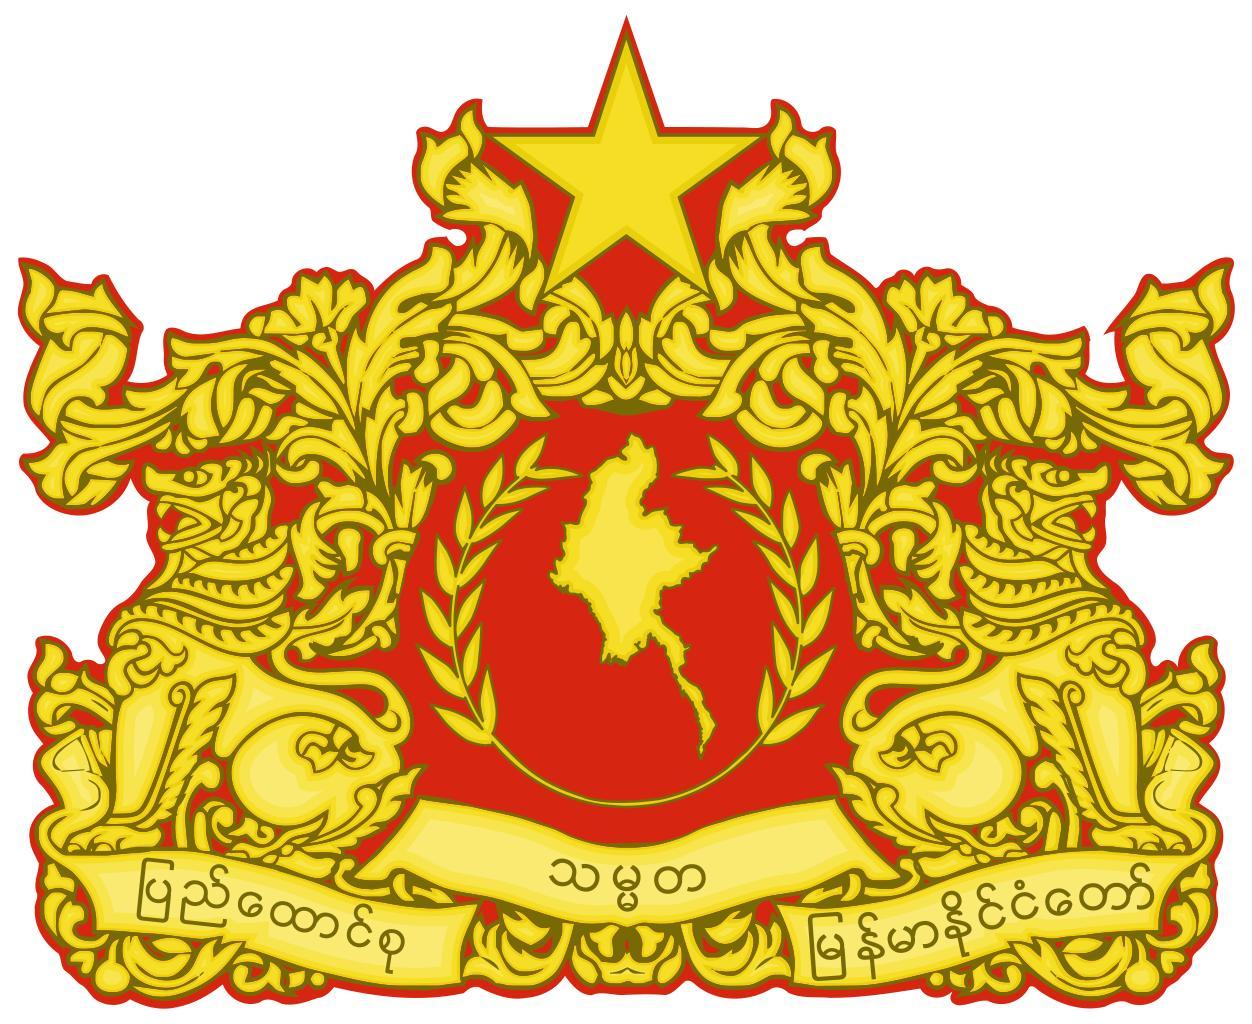 缅甸联邦共和国国徽